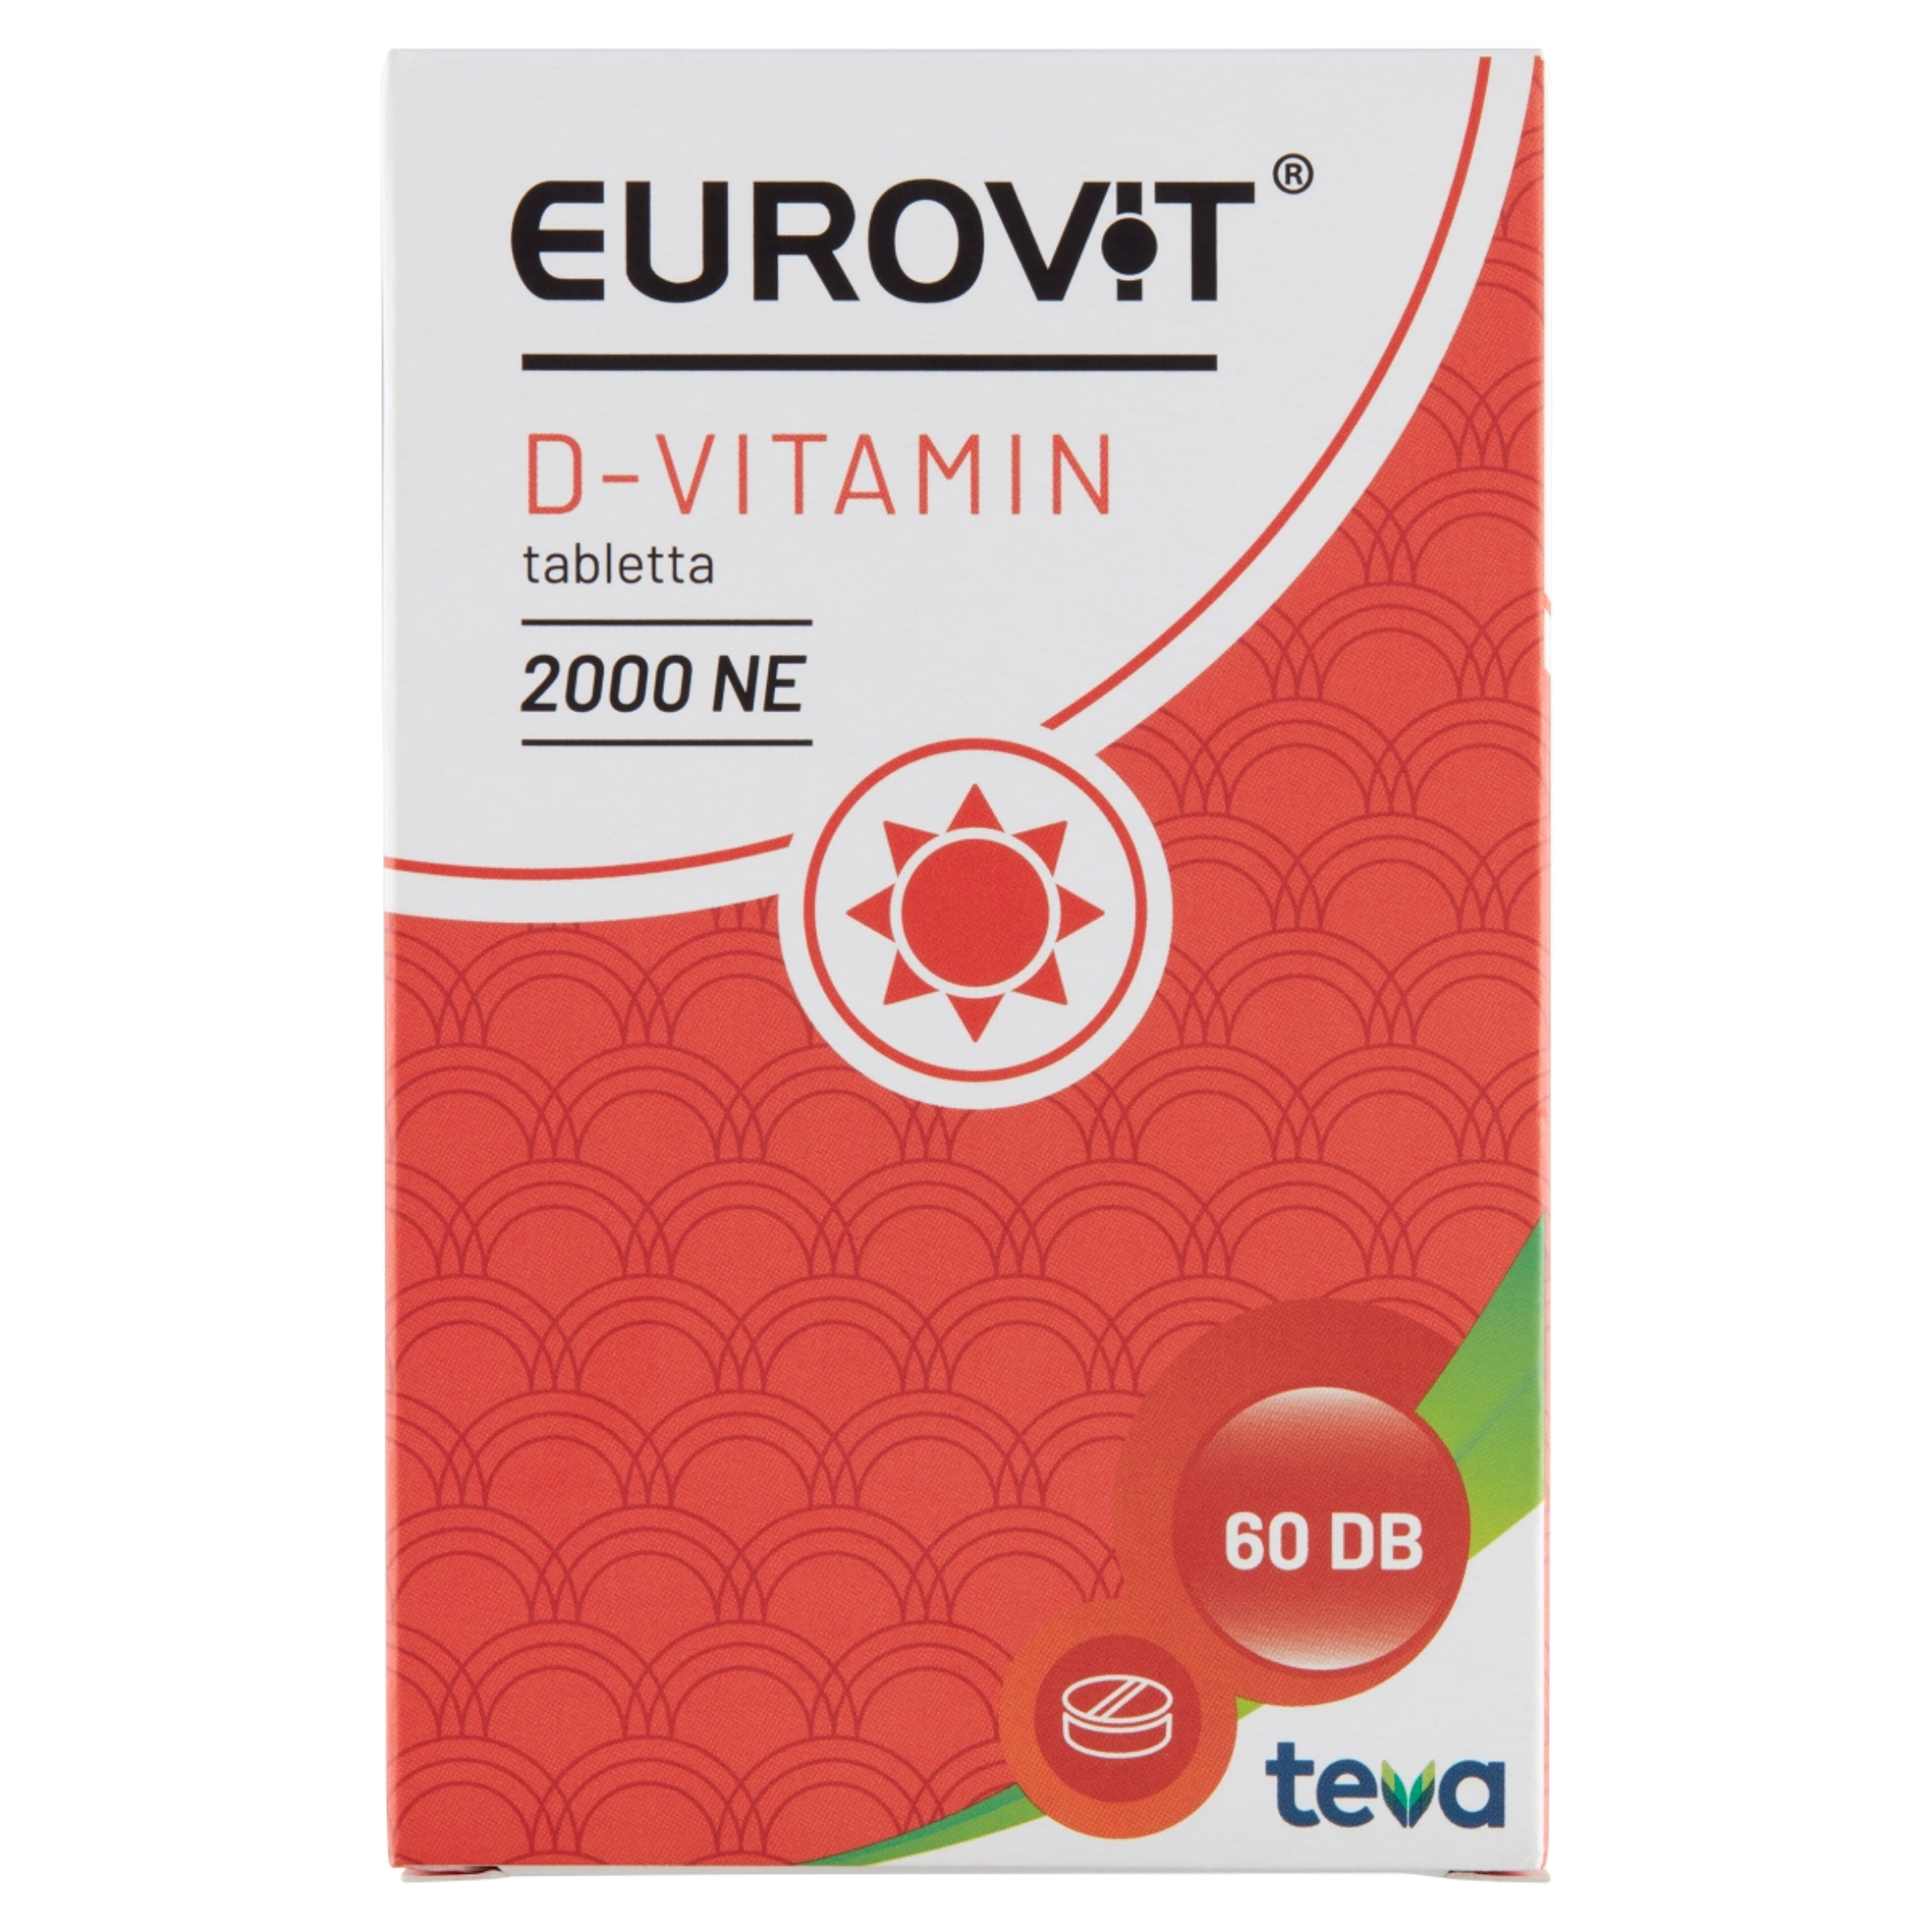 Eurovit d-vitamin 2000ne tabletta - 60 db